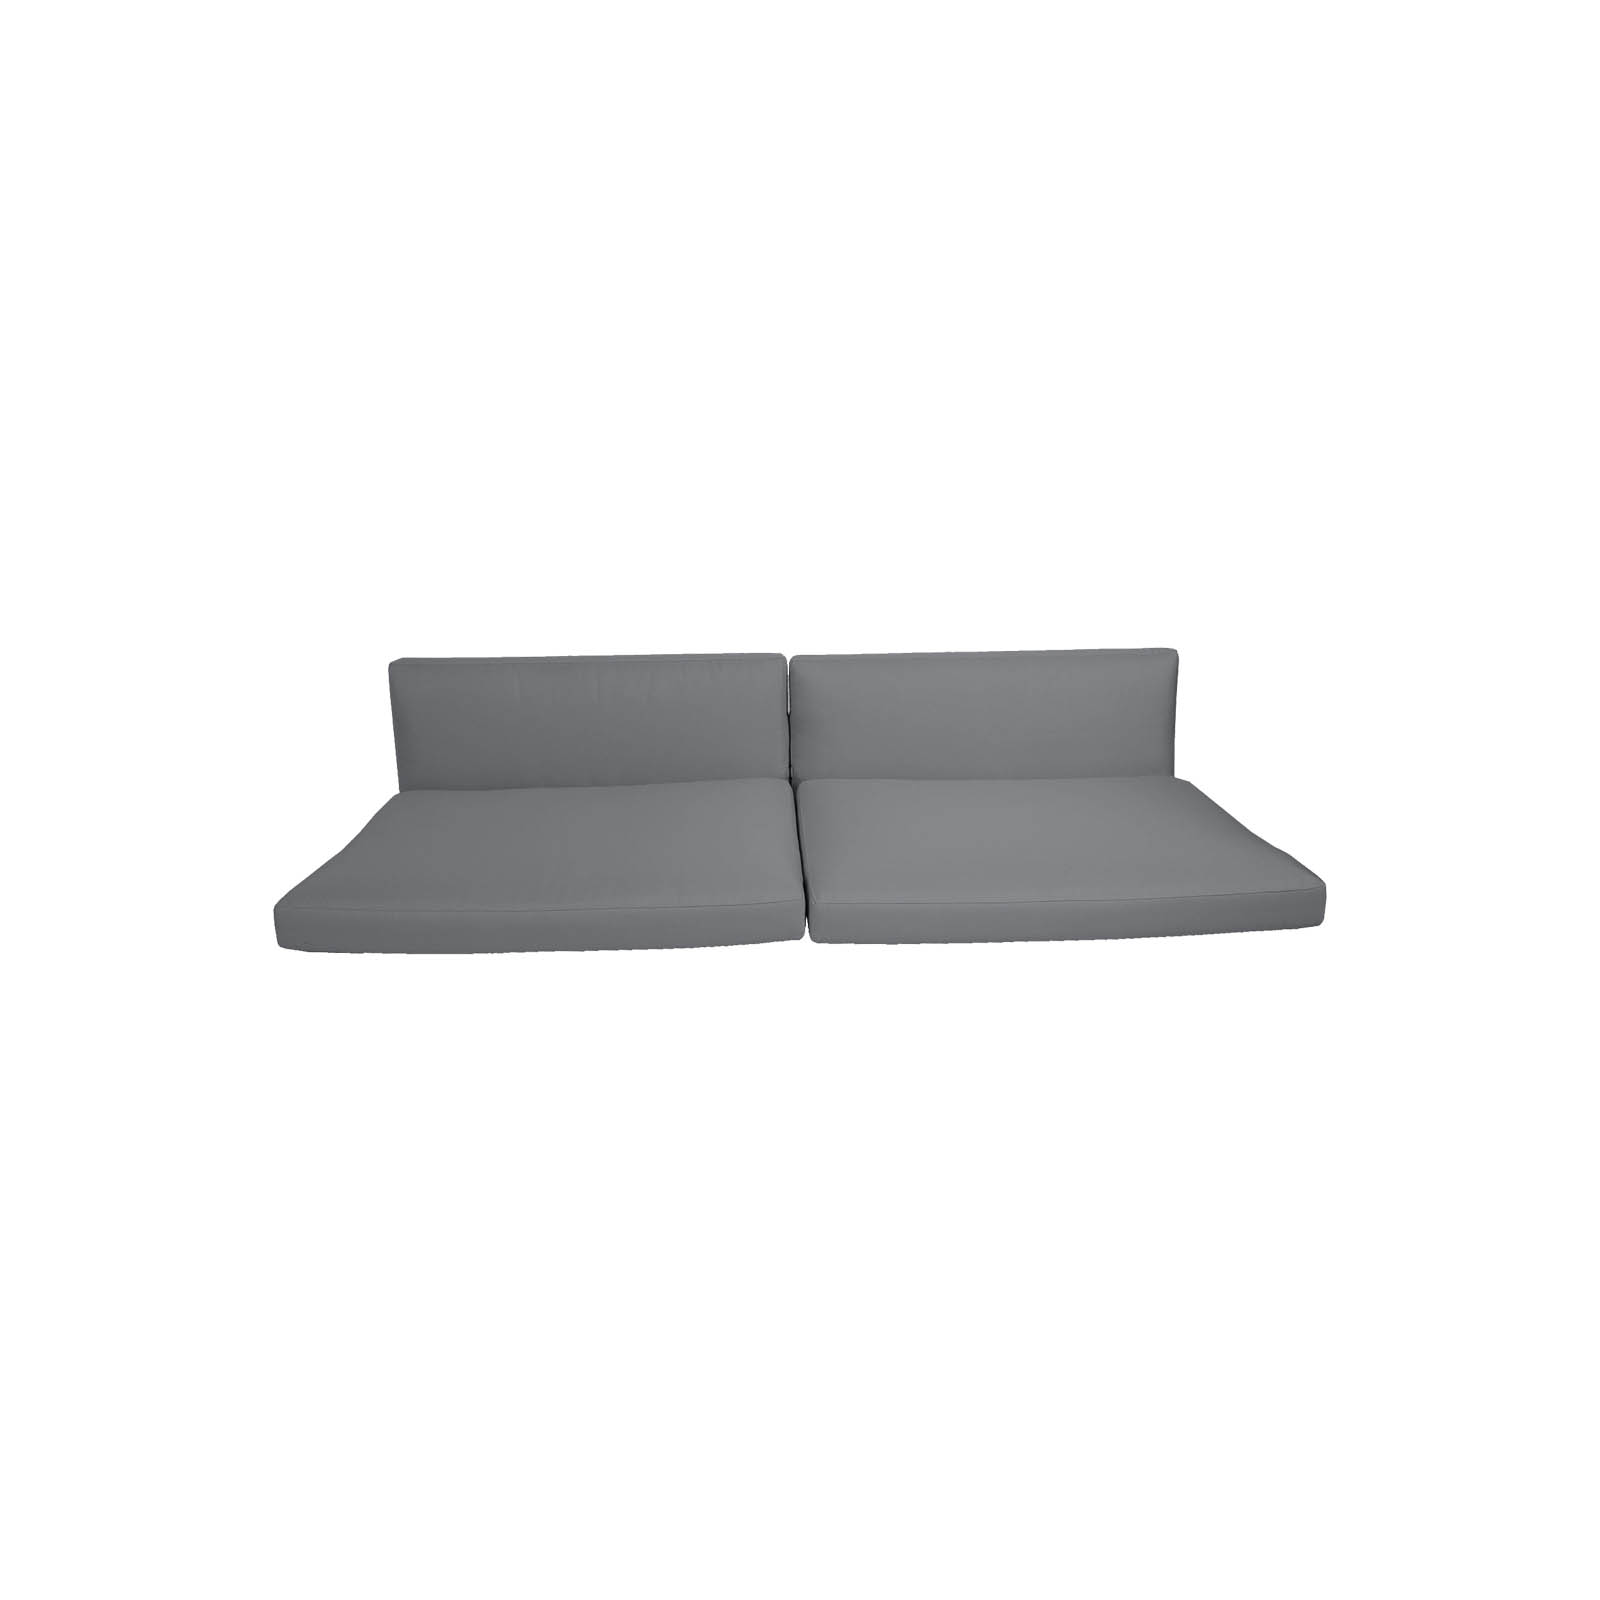 Connect Kissen fürsatz 3-Sitzer Sofa aus Cane-line Natté mit QuickDry in Grey